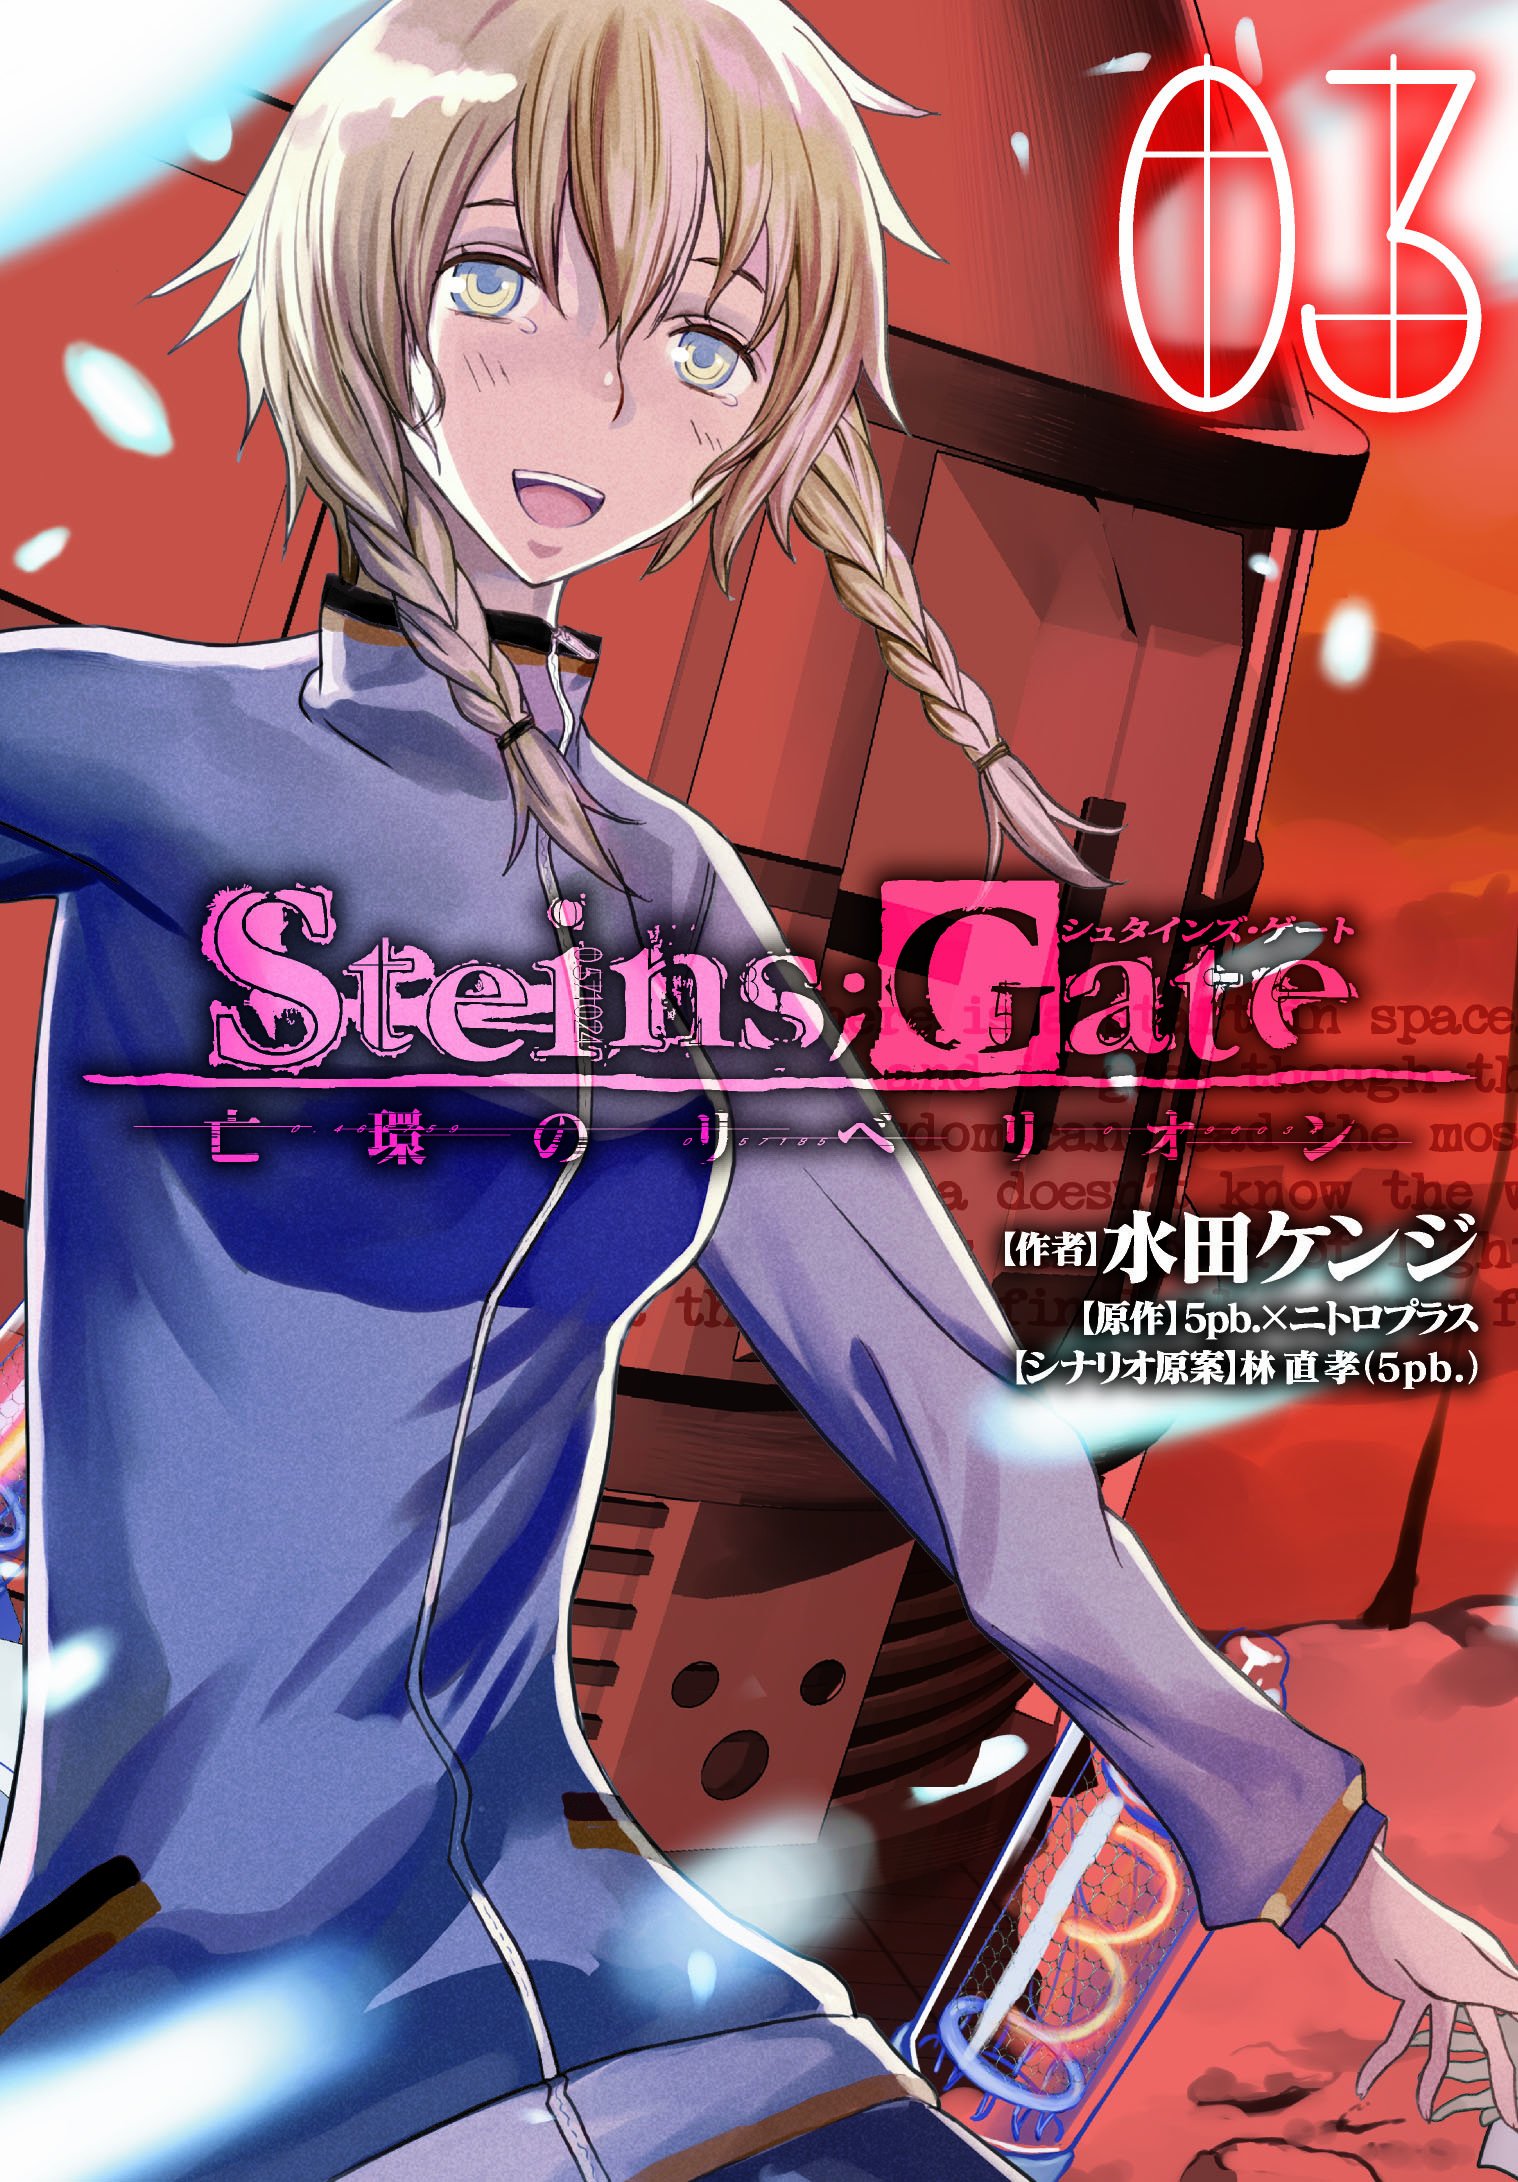 Steins;gate - Boukan No Rebellion Manga Online Free - Manganelo